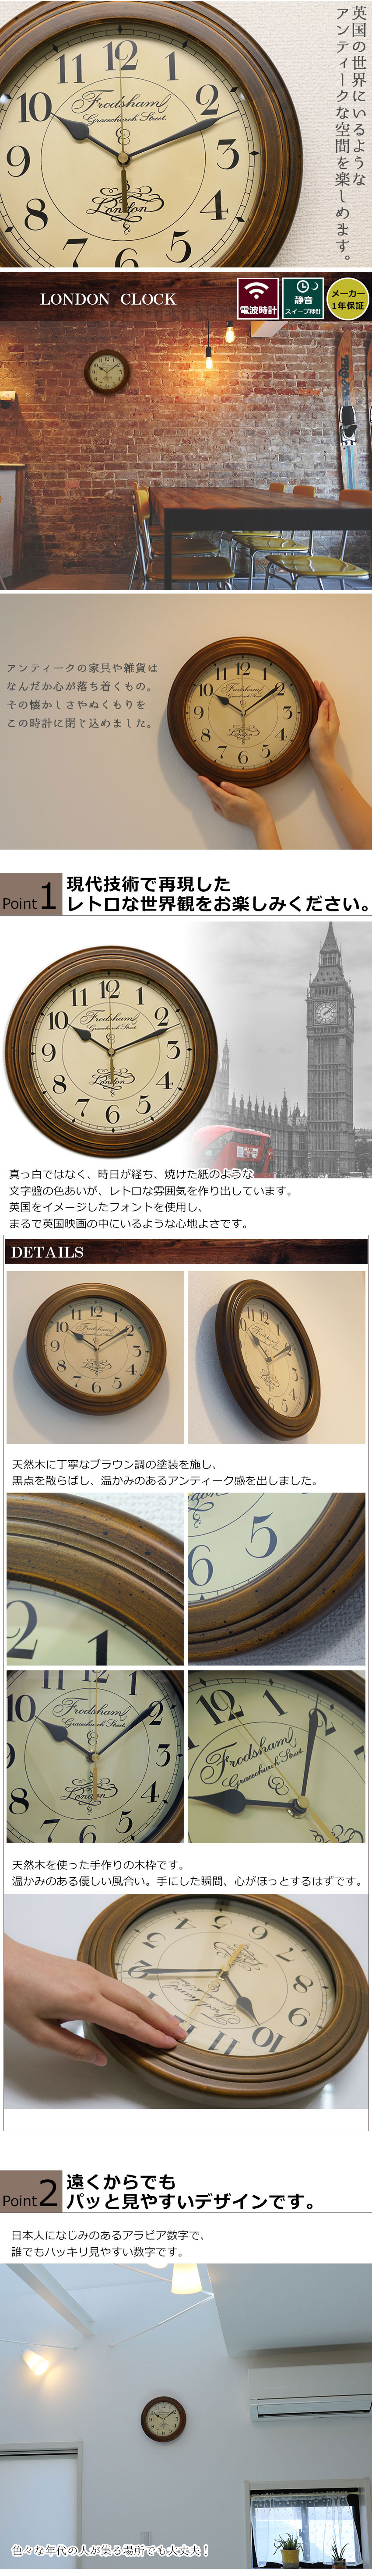 さんてる アンティーク調 掛け時計 電波スイープムーブメント DQL675A サンテル 日本製 壁掛け時計 掛け時計、壁掛け時計